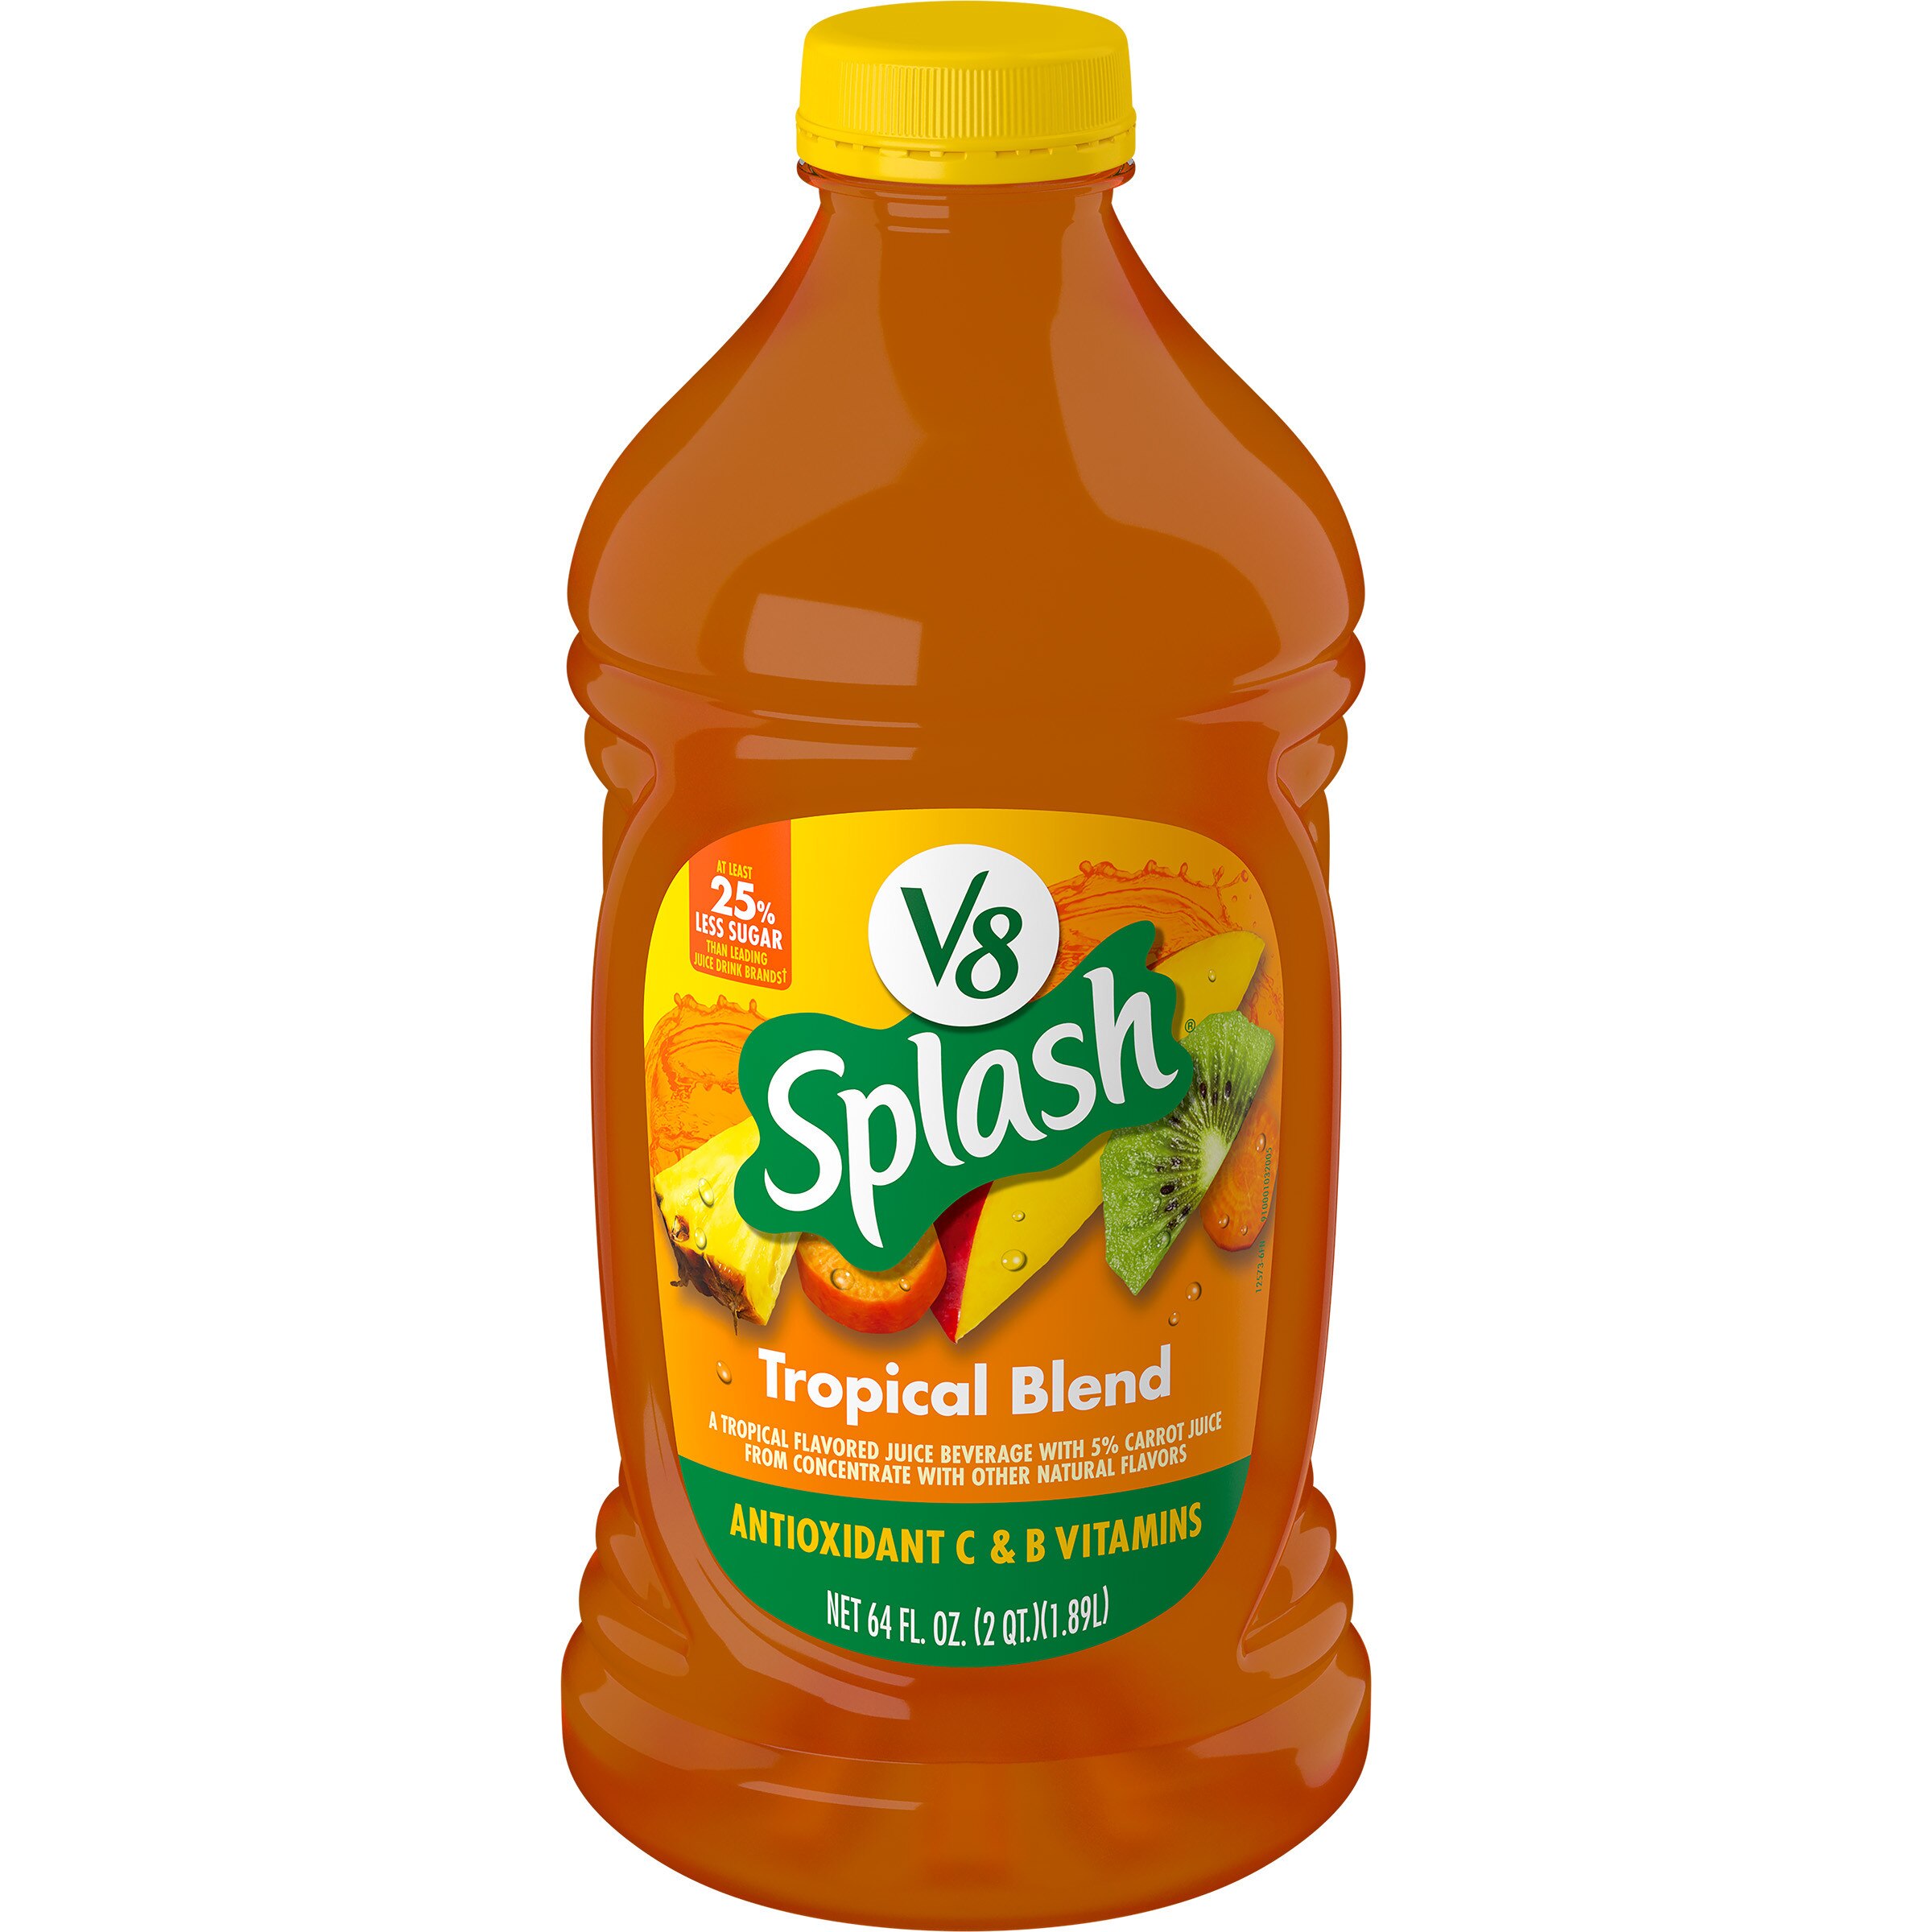 V8 Splash Tropical Fruit Blend Flavored Juice Beverage, 64 FL OZ Bottle